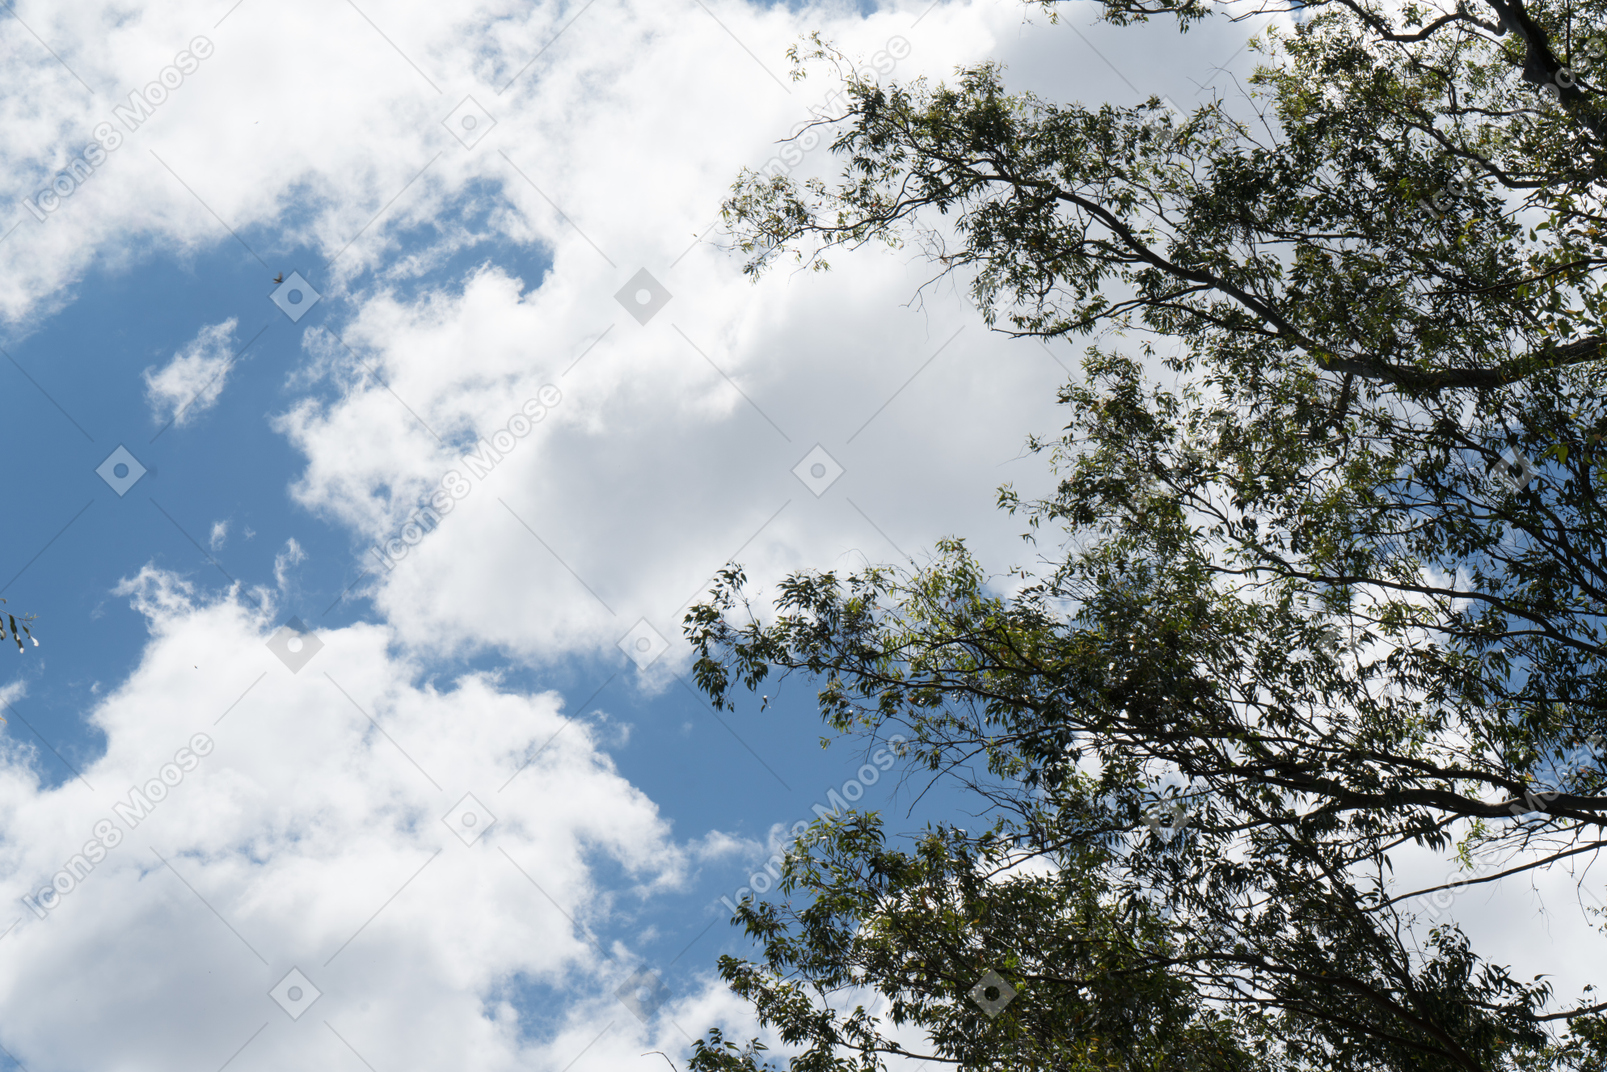 La vista del cielo nublado y el árbol arriba